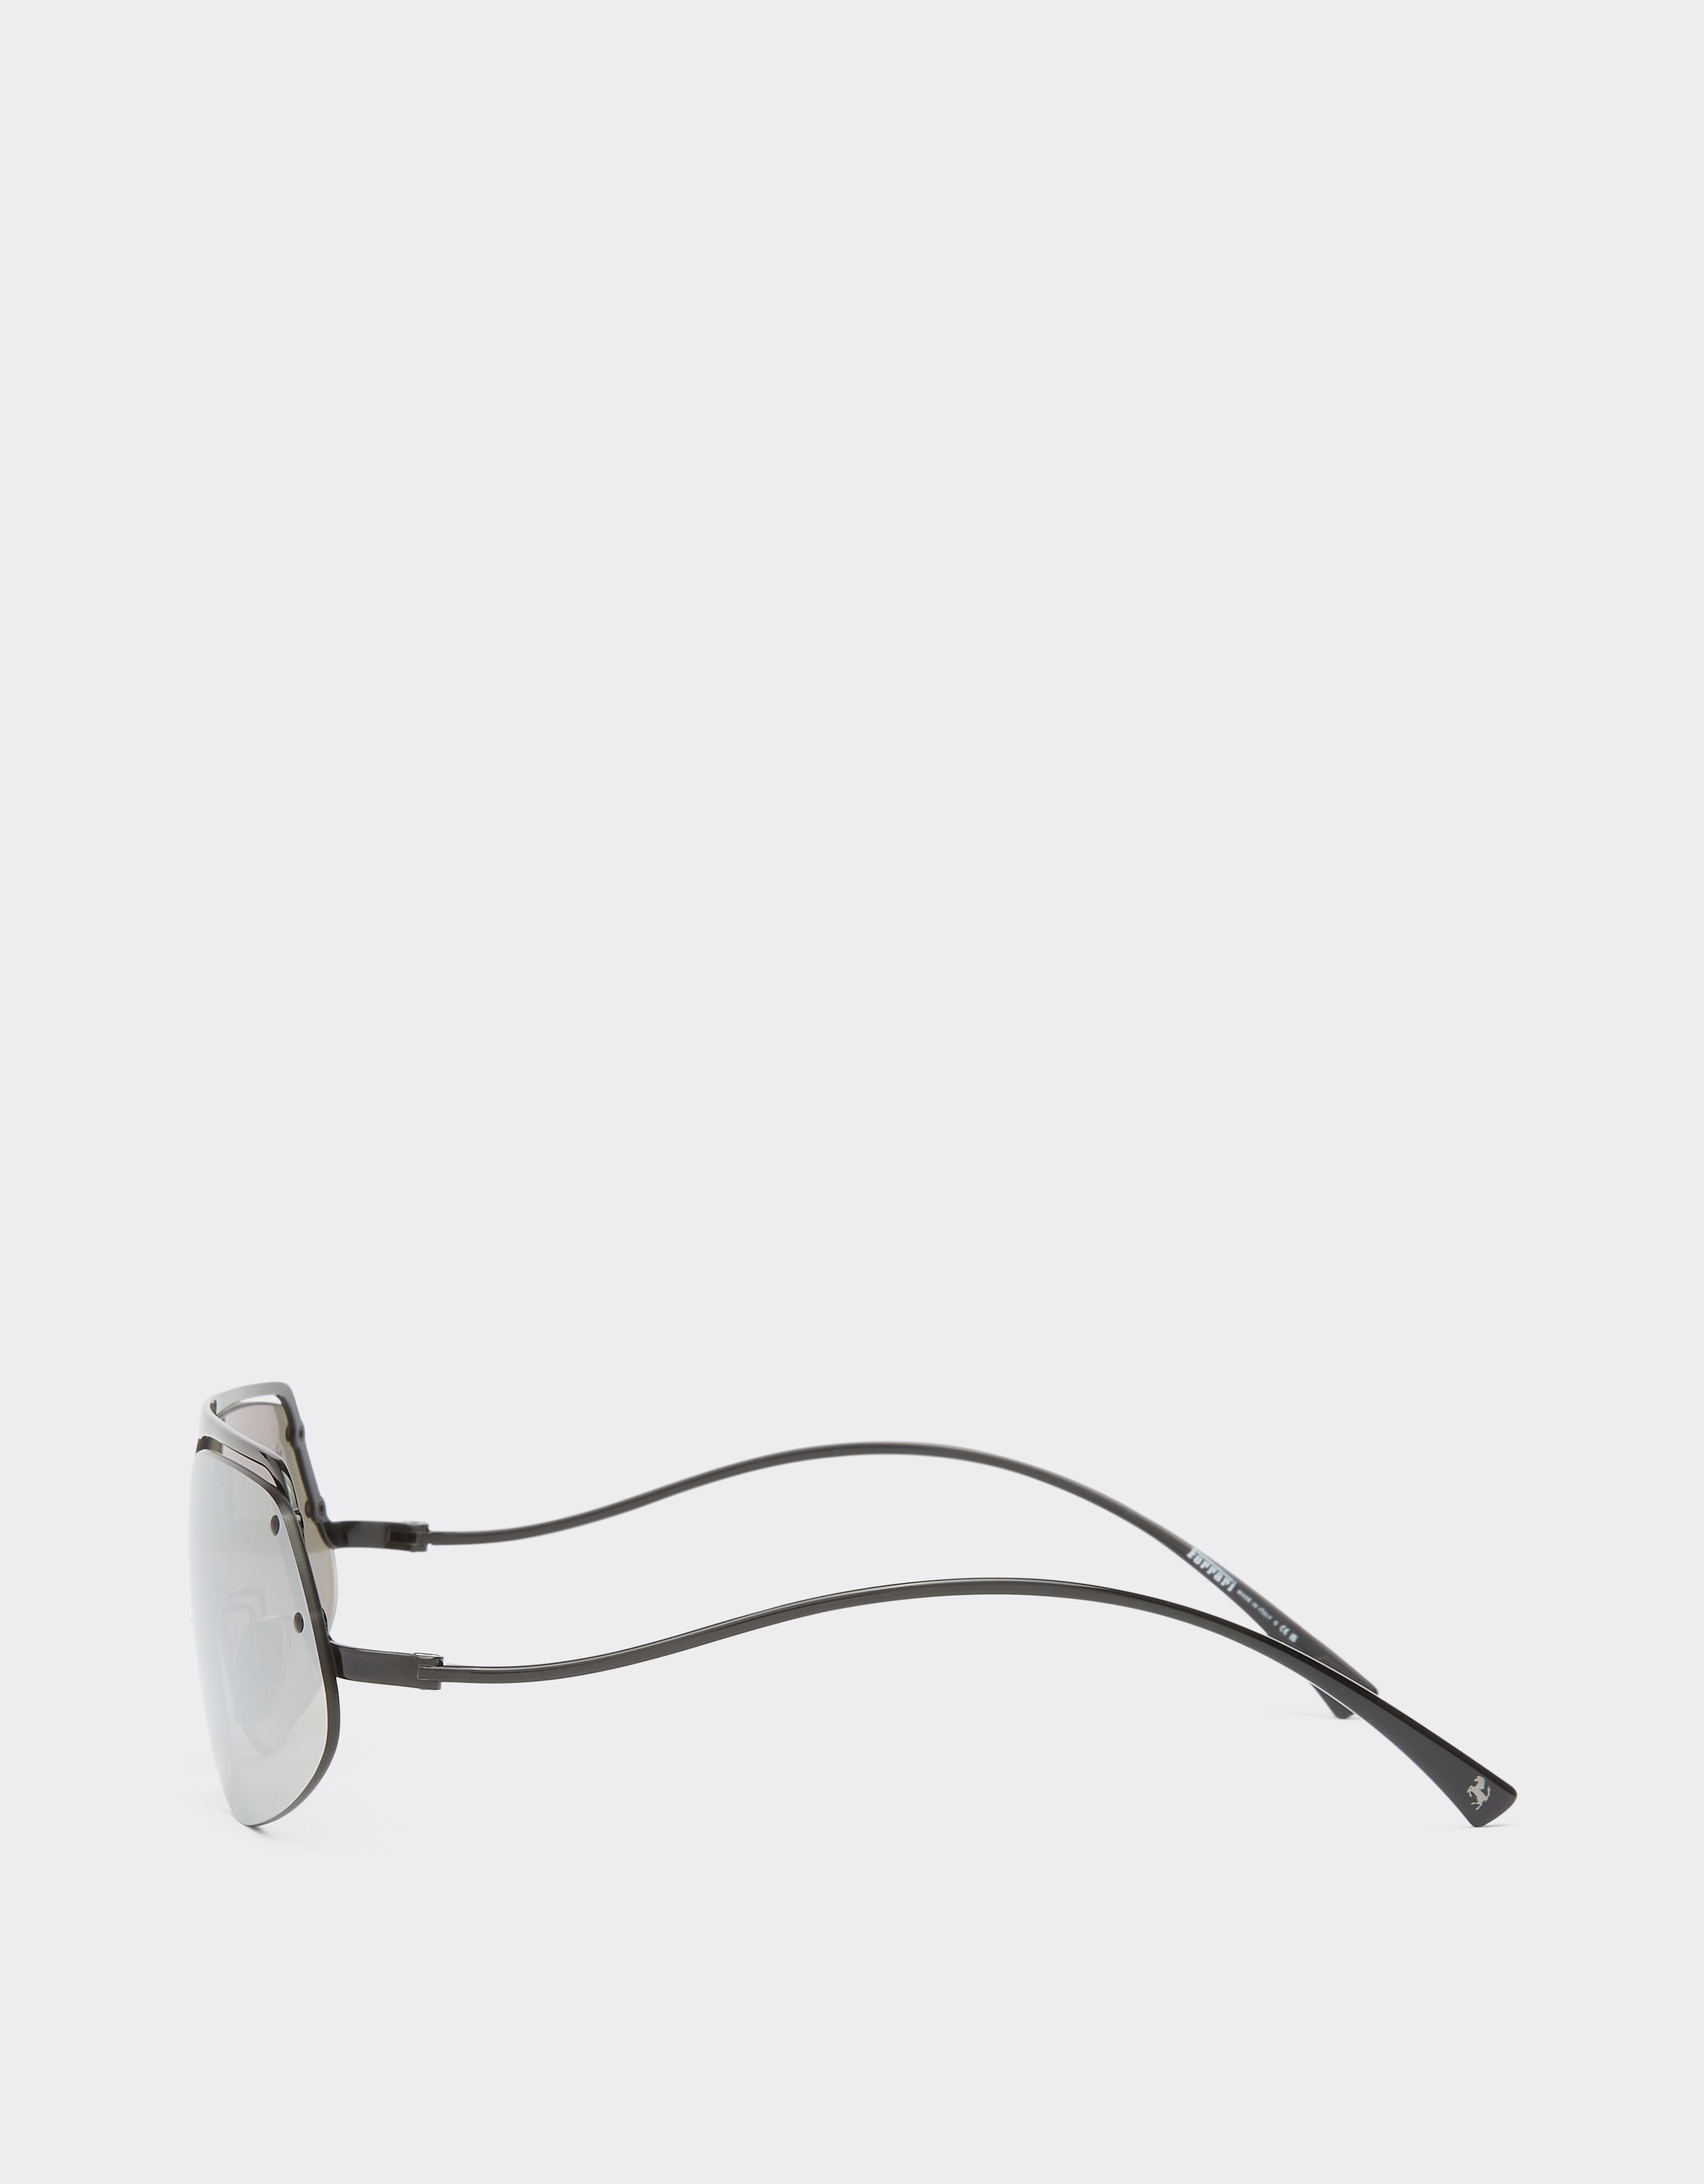 Ferrari Ferrari Sonnenbrille aus schwarzem Metall mit verspiegelten Gläsern Schwarz F1199f